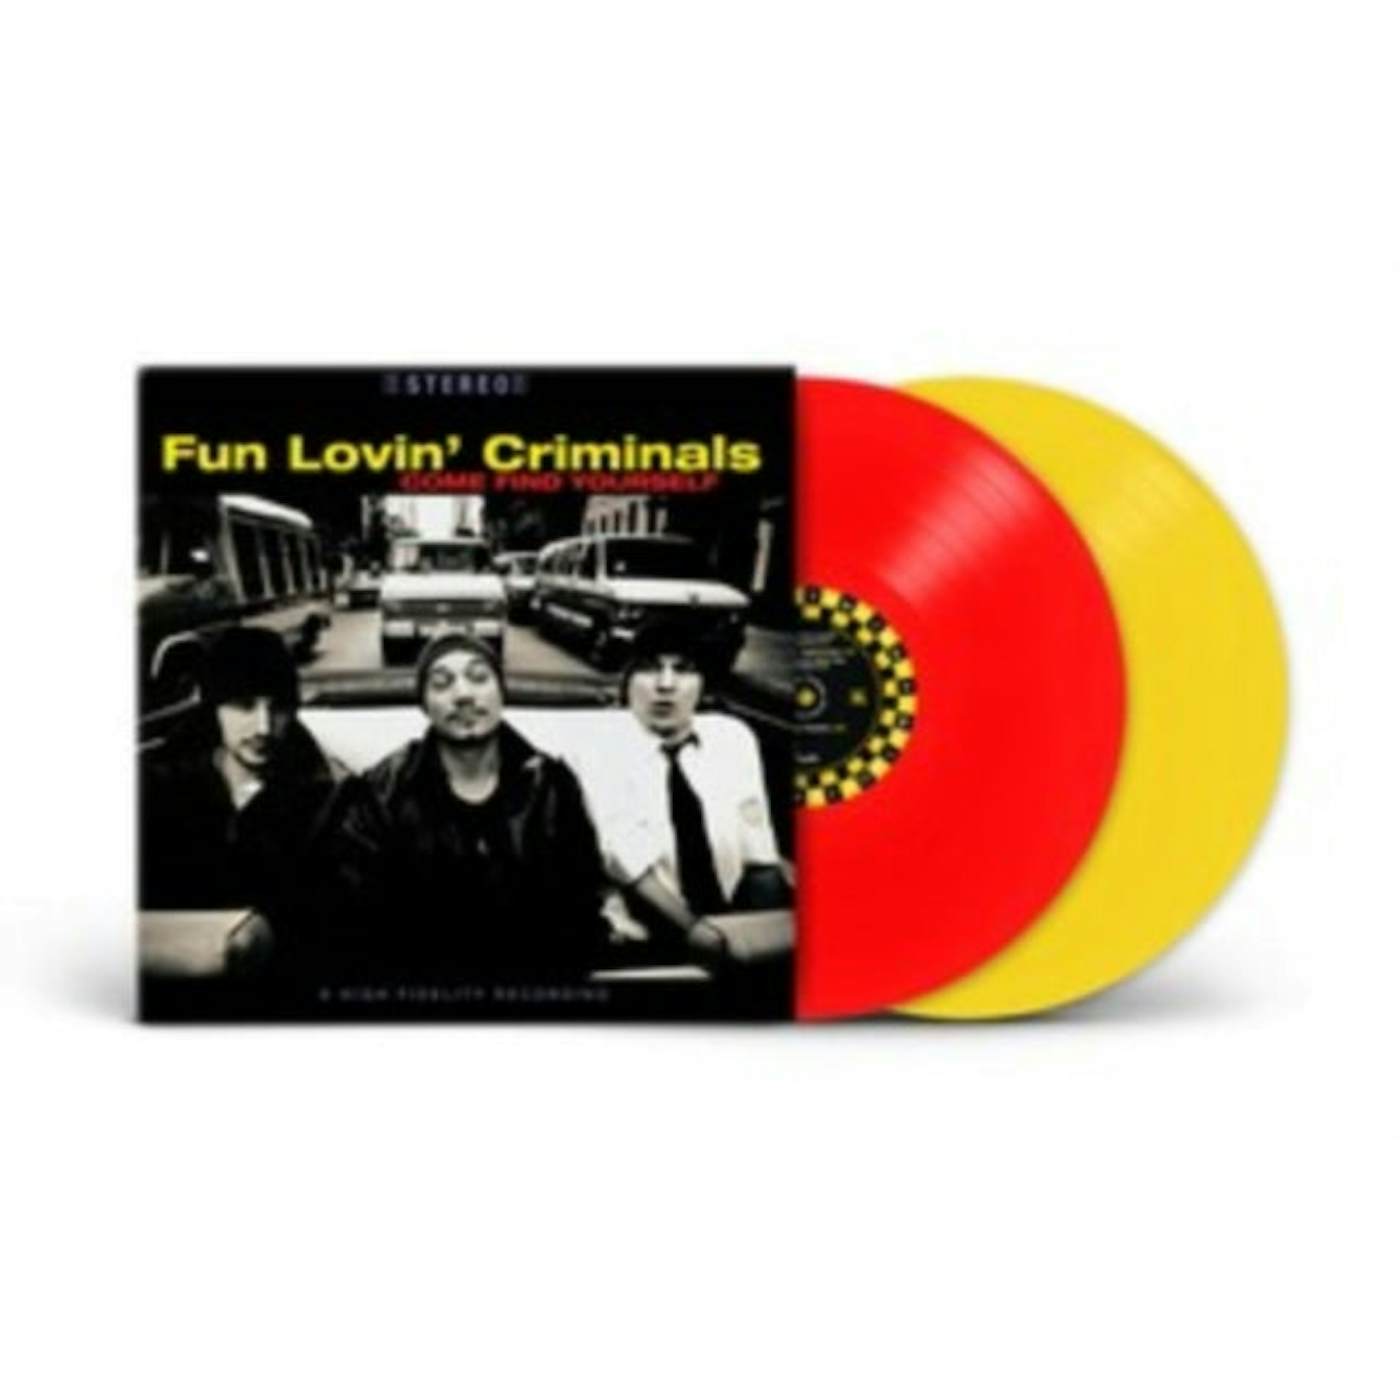 Fun Lovin' Criminals LP Vinyl Record - Come Find Yourself (25th Anniversary Edition)